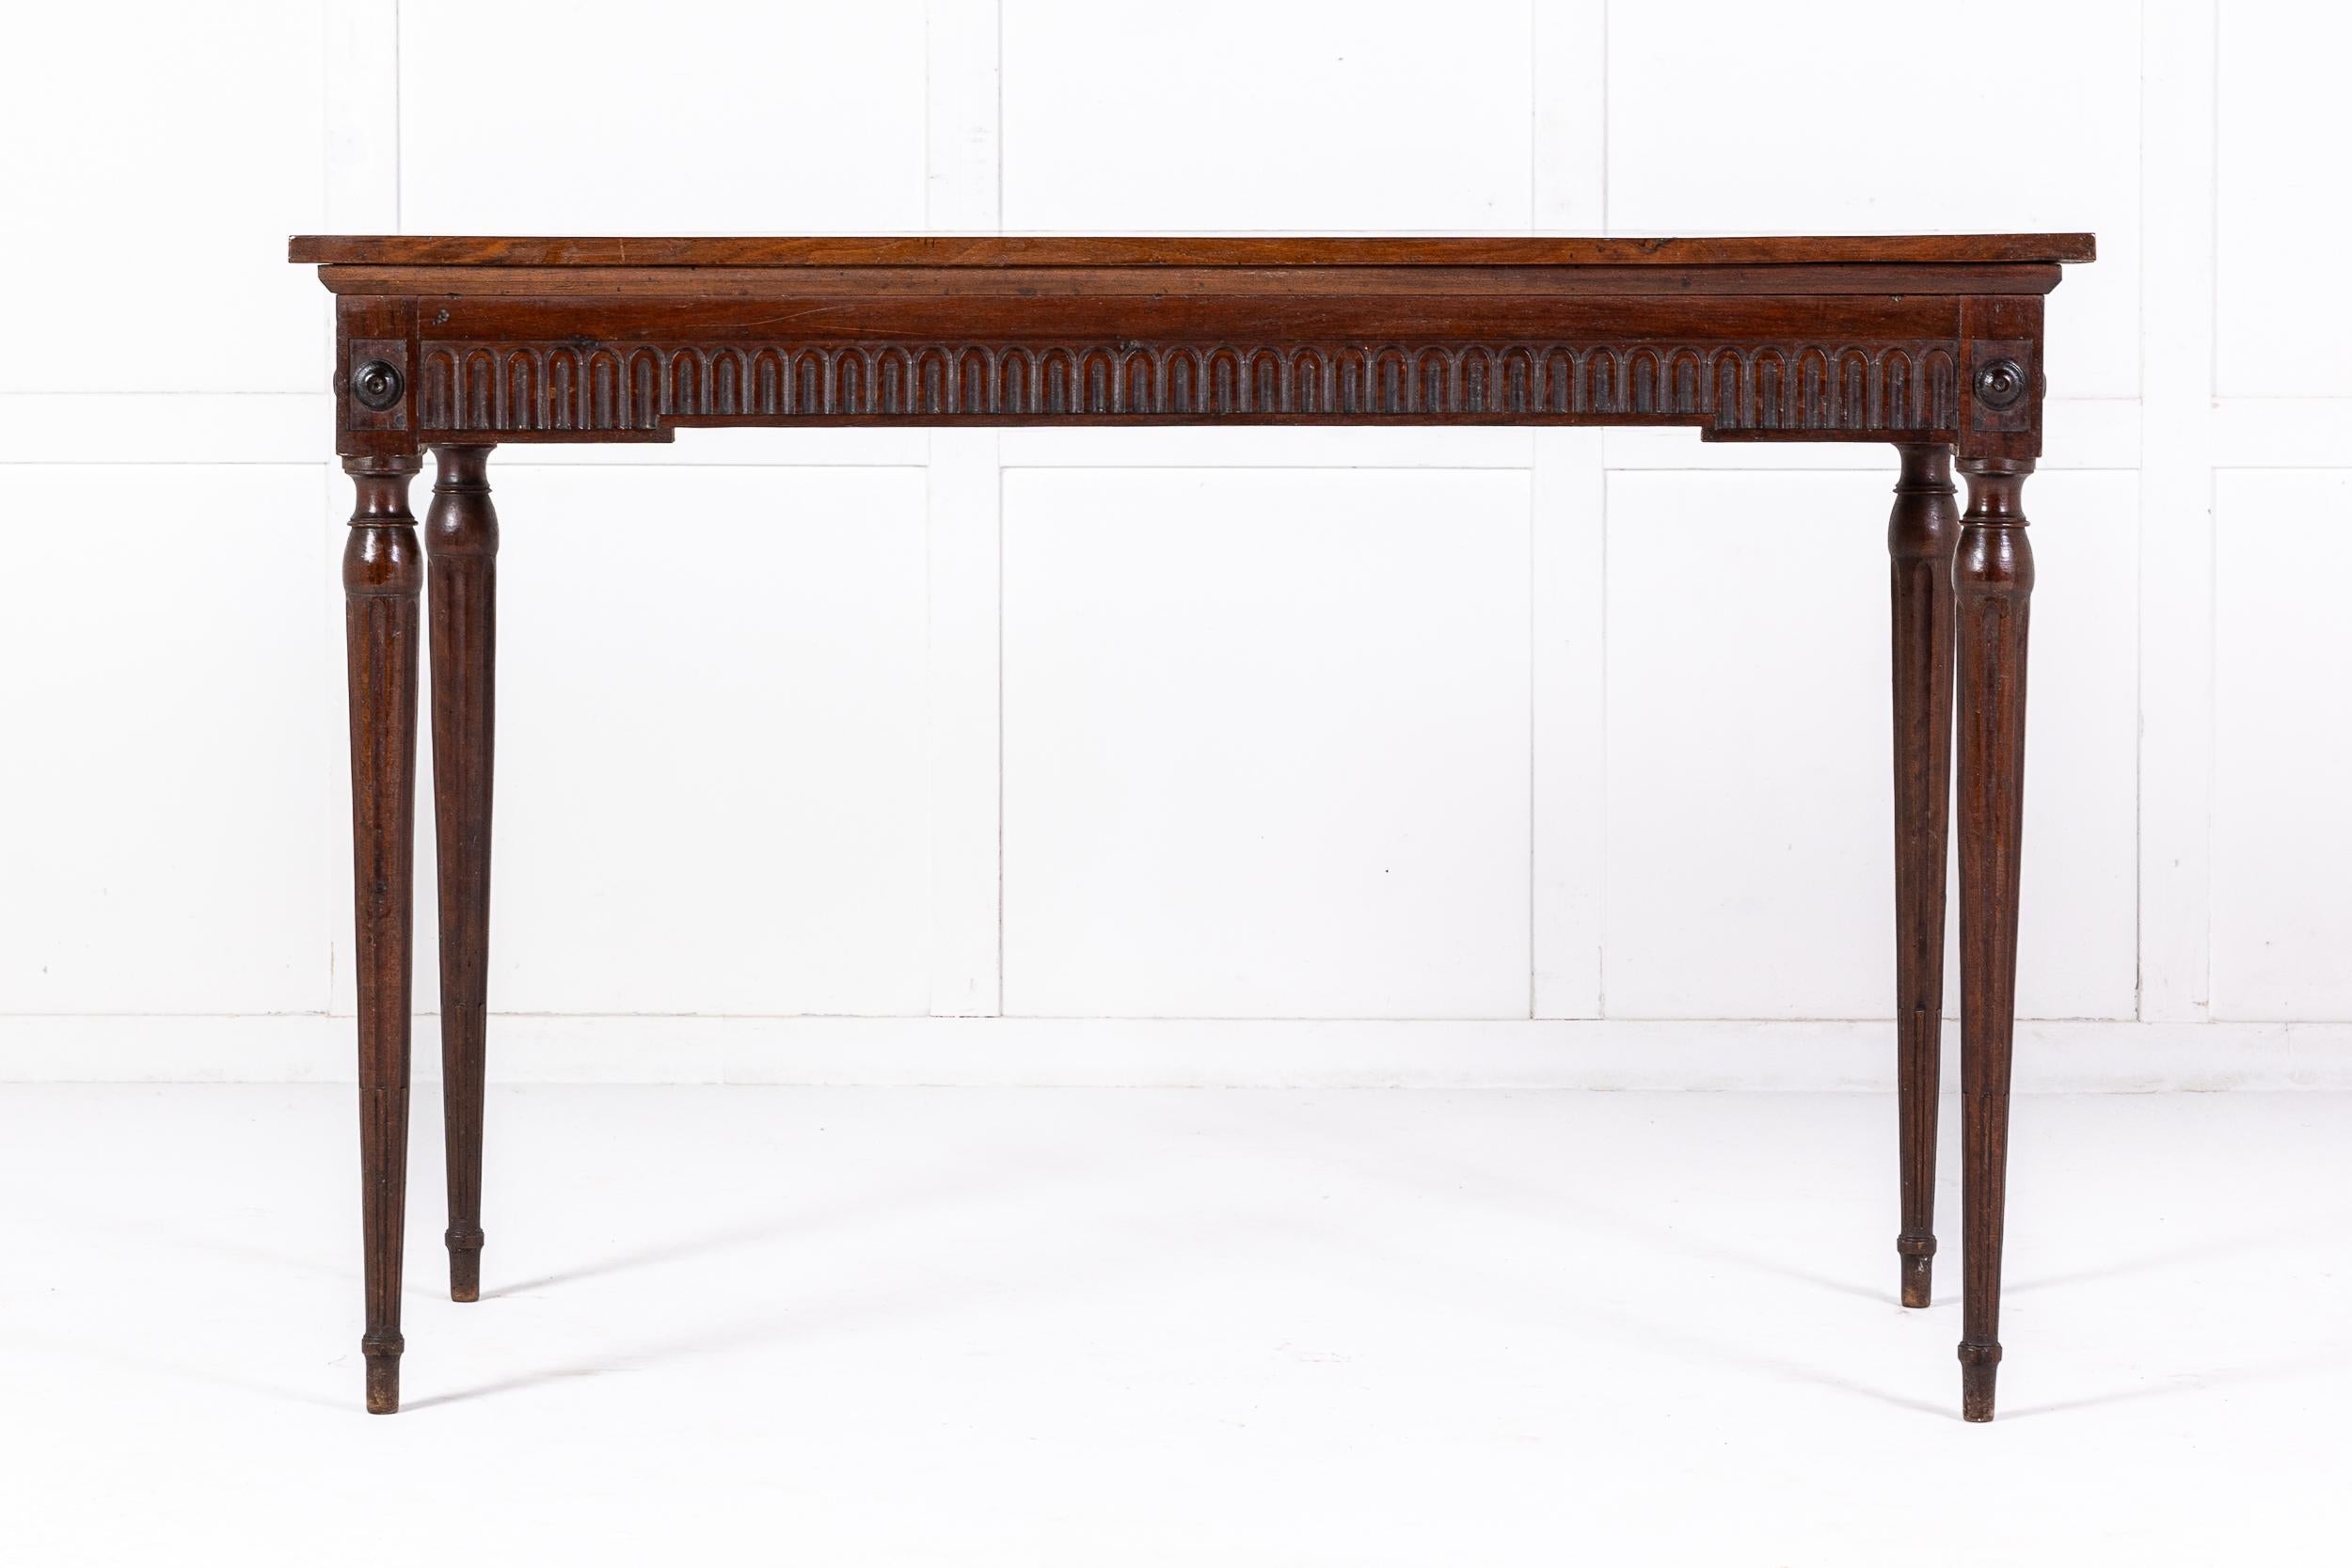 Ein stilvoller Beistelltisch aus französischem Nussbaumholz aus dem späten 18.

Dieser schöne Tisch aus dem 18. Jahrhundert aus der Zeit Ludwigs XVI. ist ein sehr raffiniertes Möbelstück. Die rechteckige, überhängende Platte ist schön gemasert und